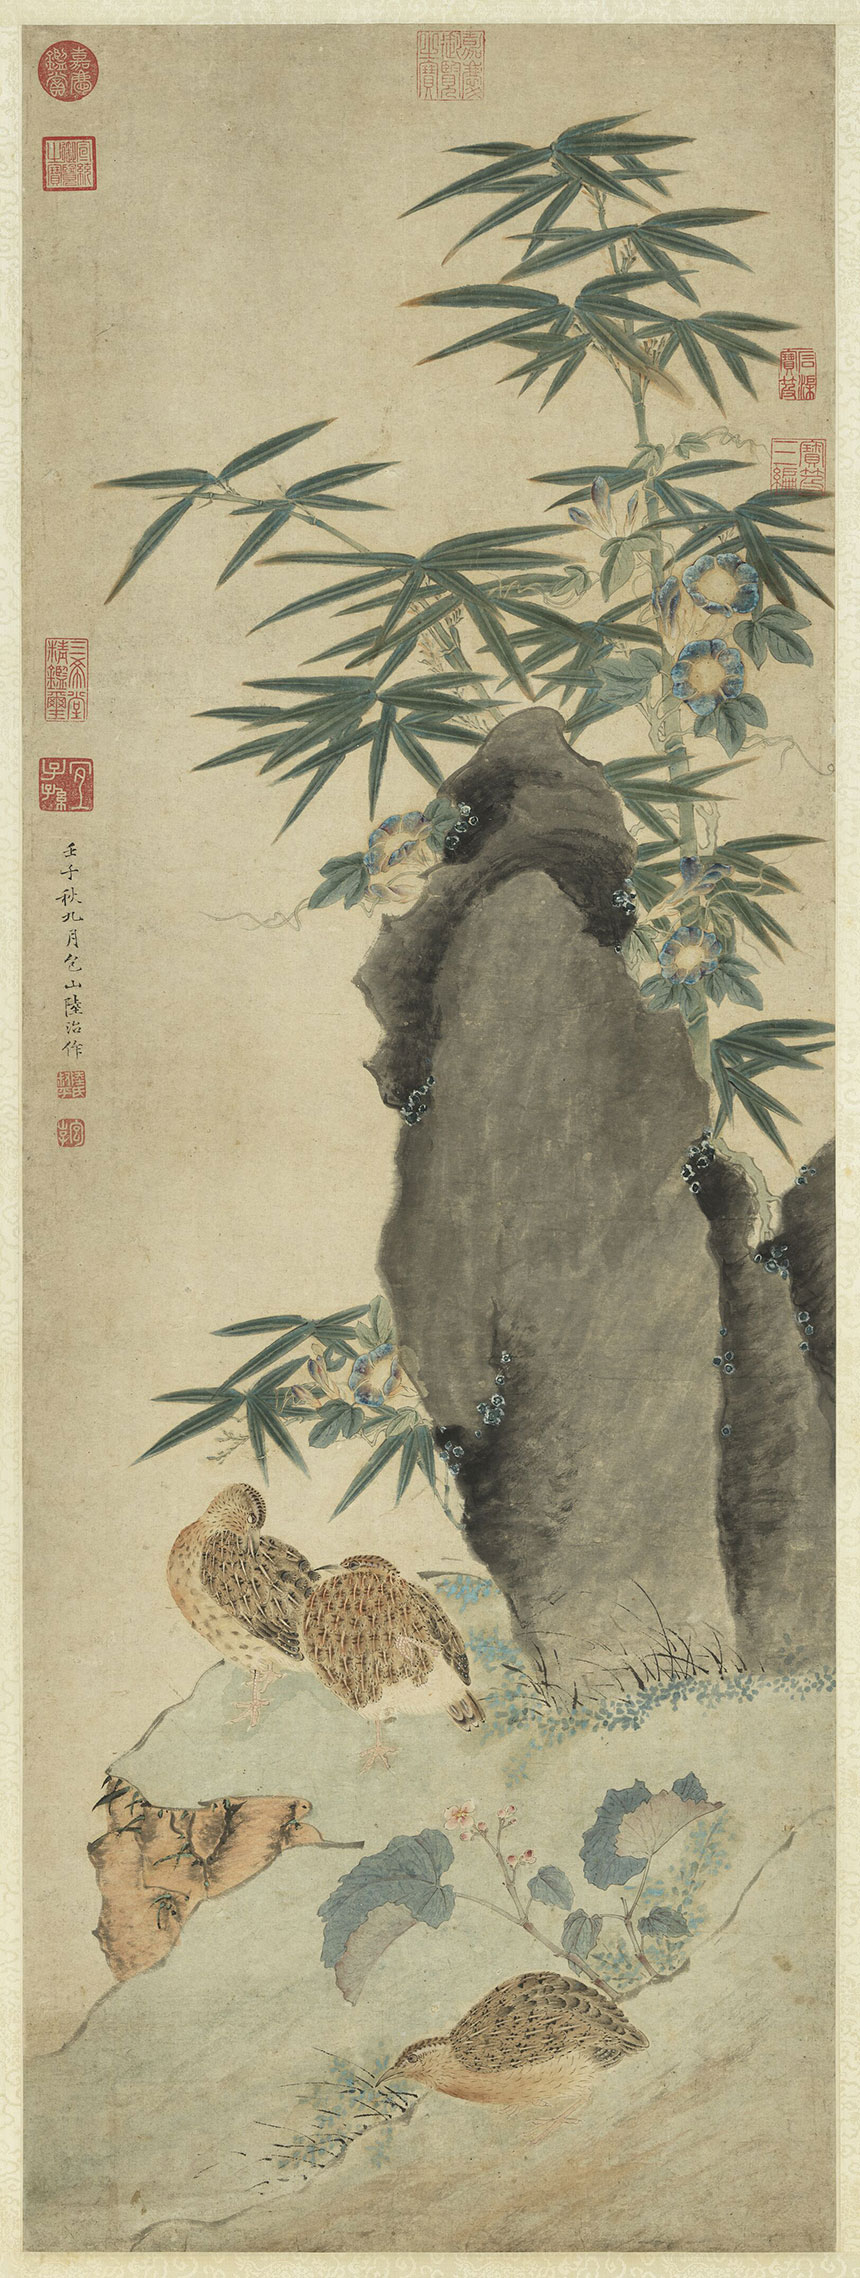 明·陆治《竹报平安图》
纸本 立轴 设色 117.9x43.1厘米
台北故宫博物院藏